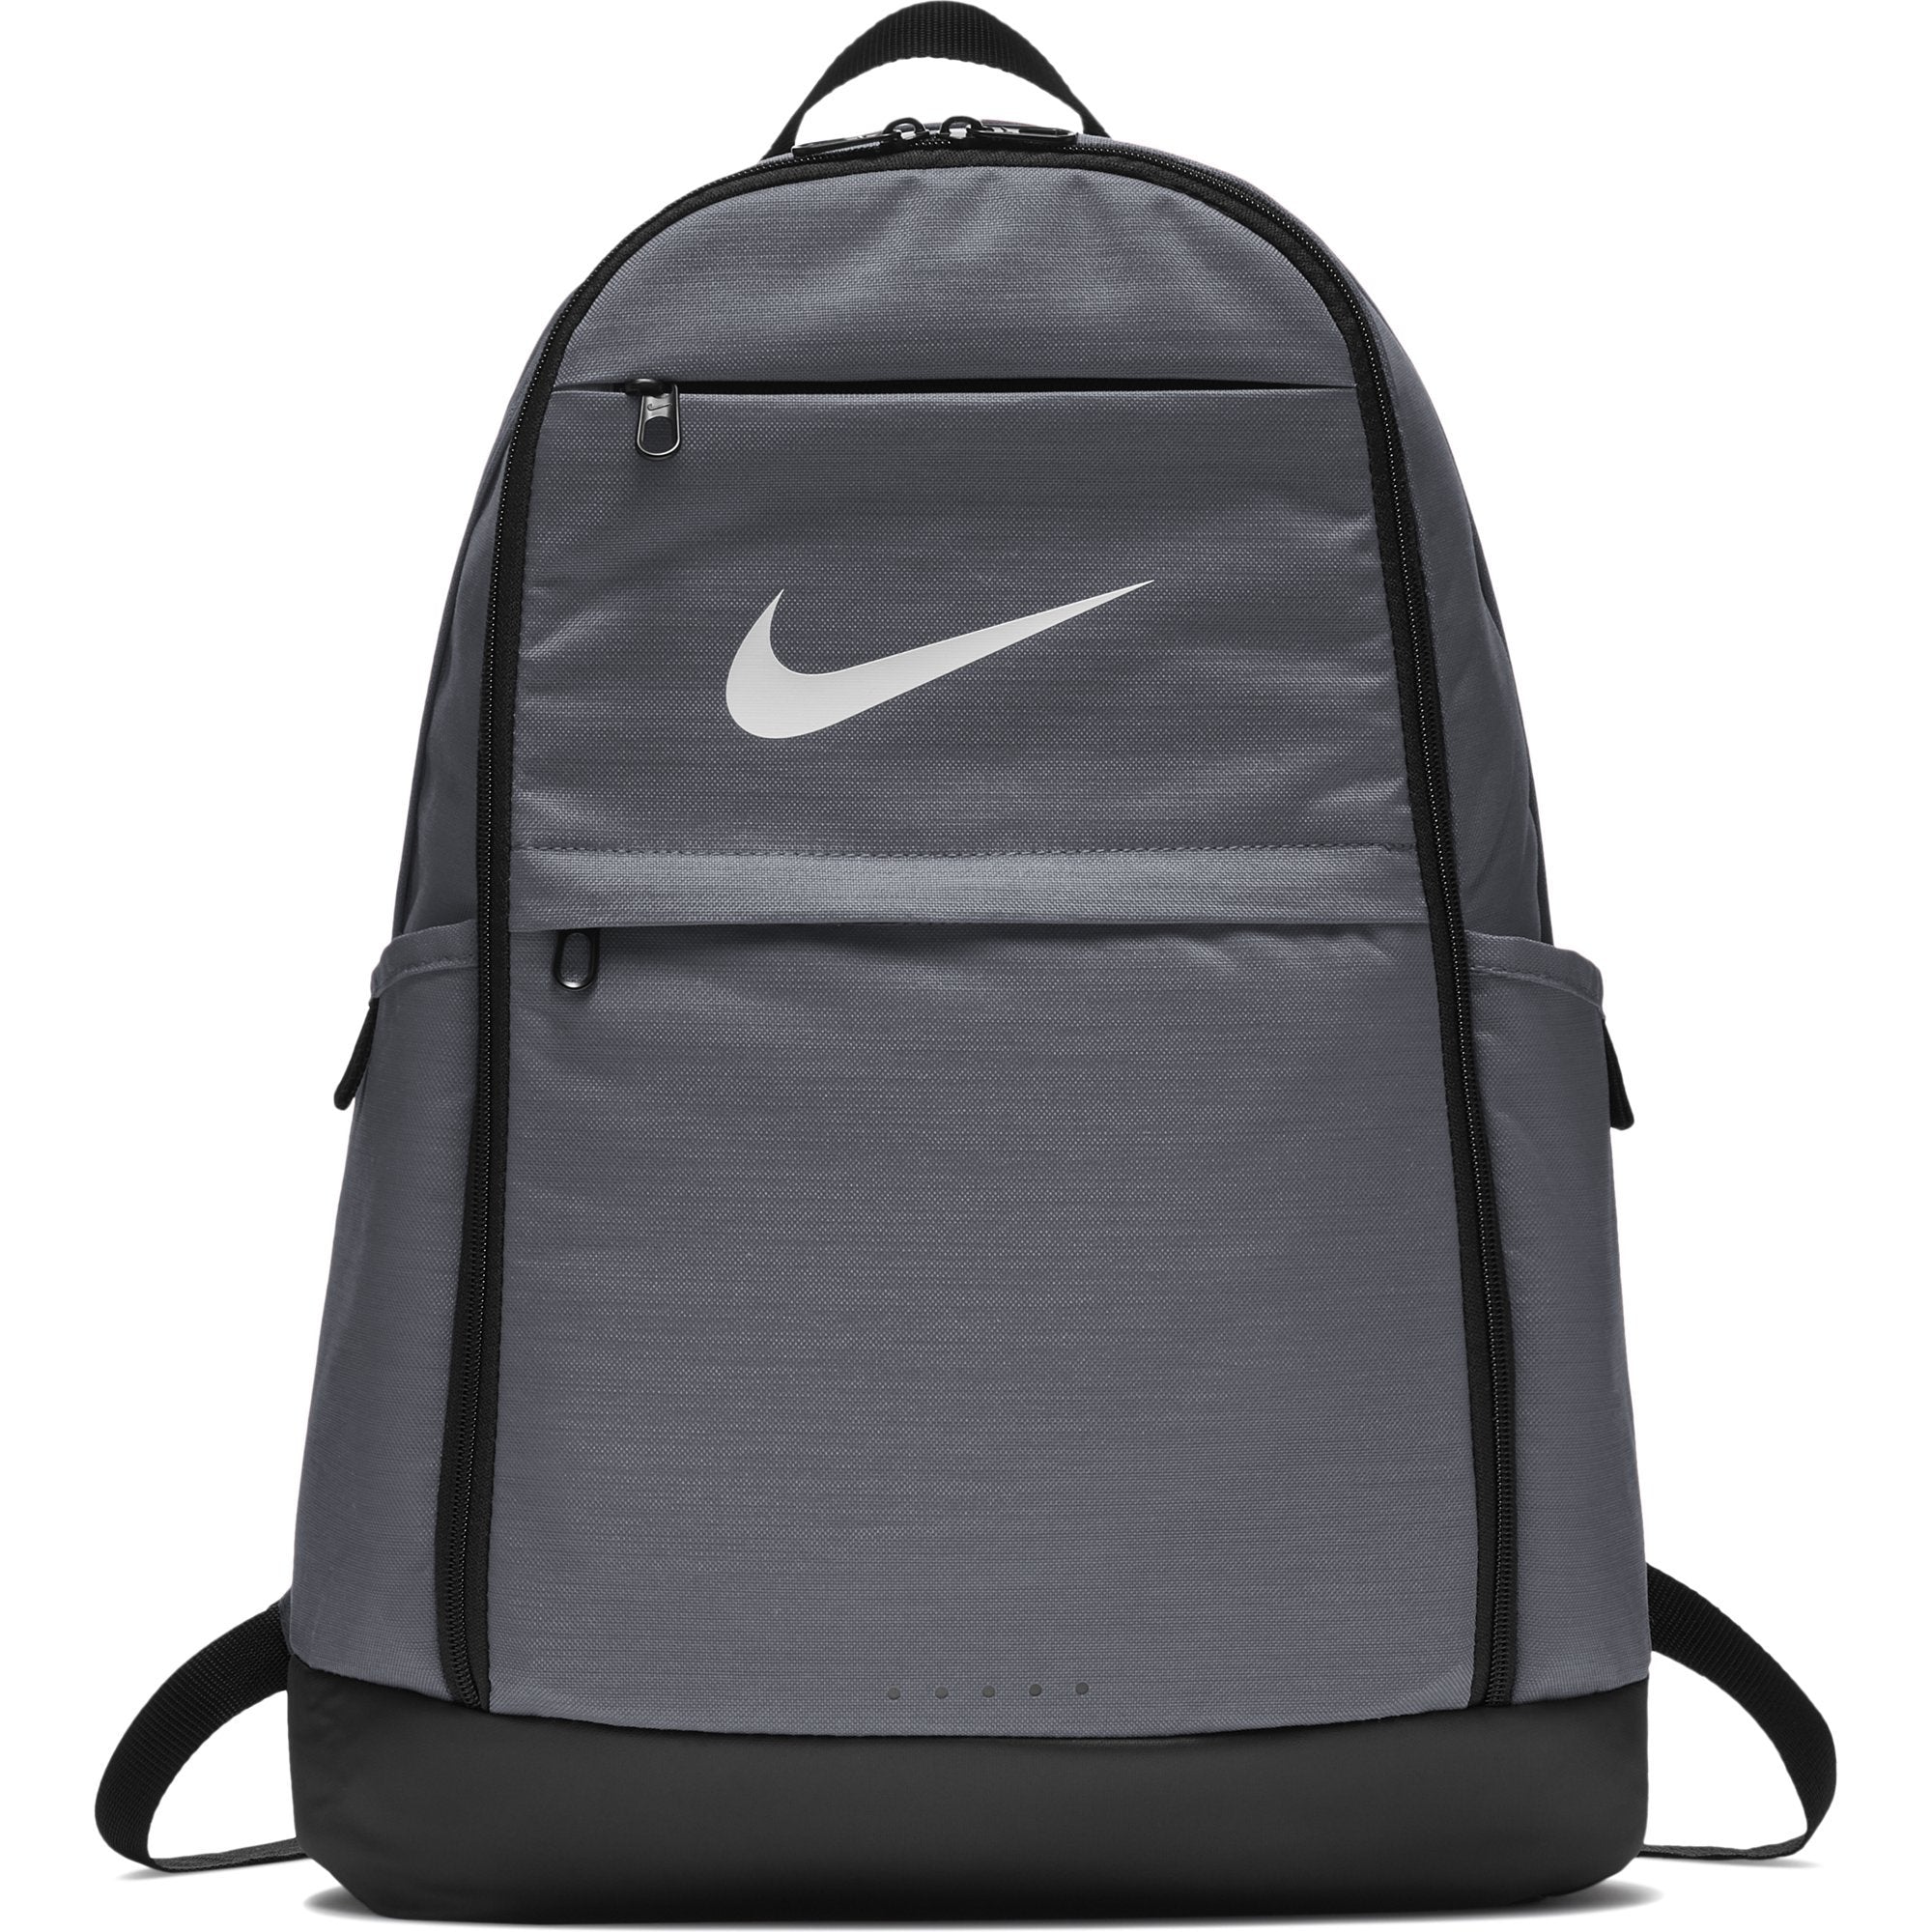 Nike USA Wrestling Brasilia Training Backpack - Grey/Black